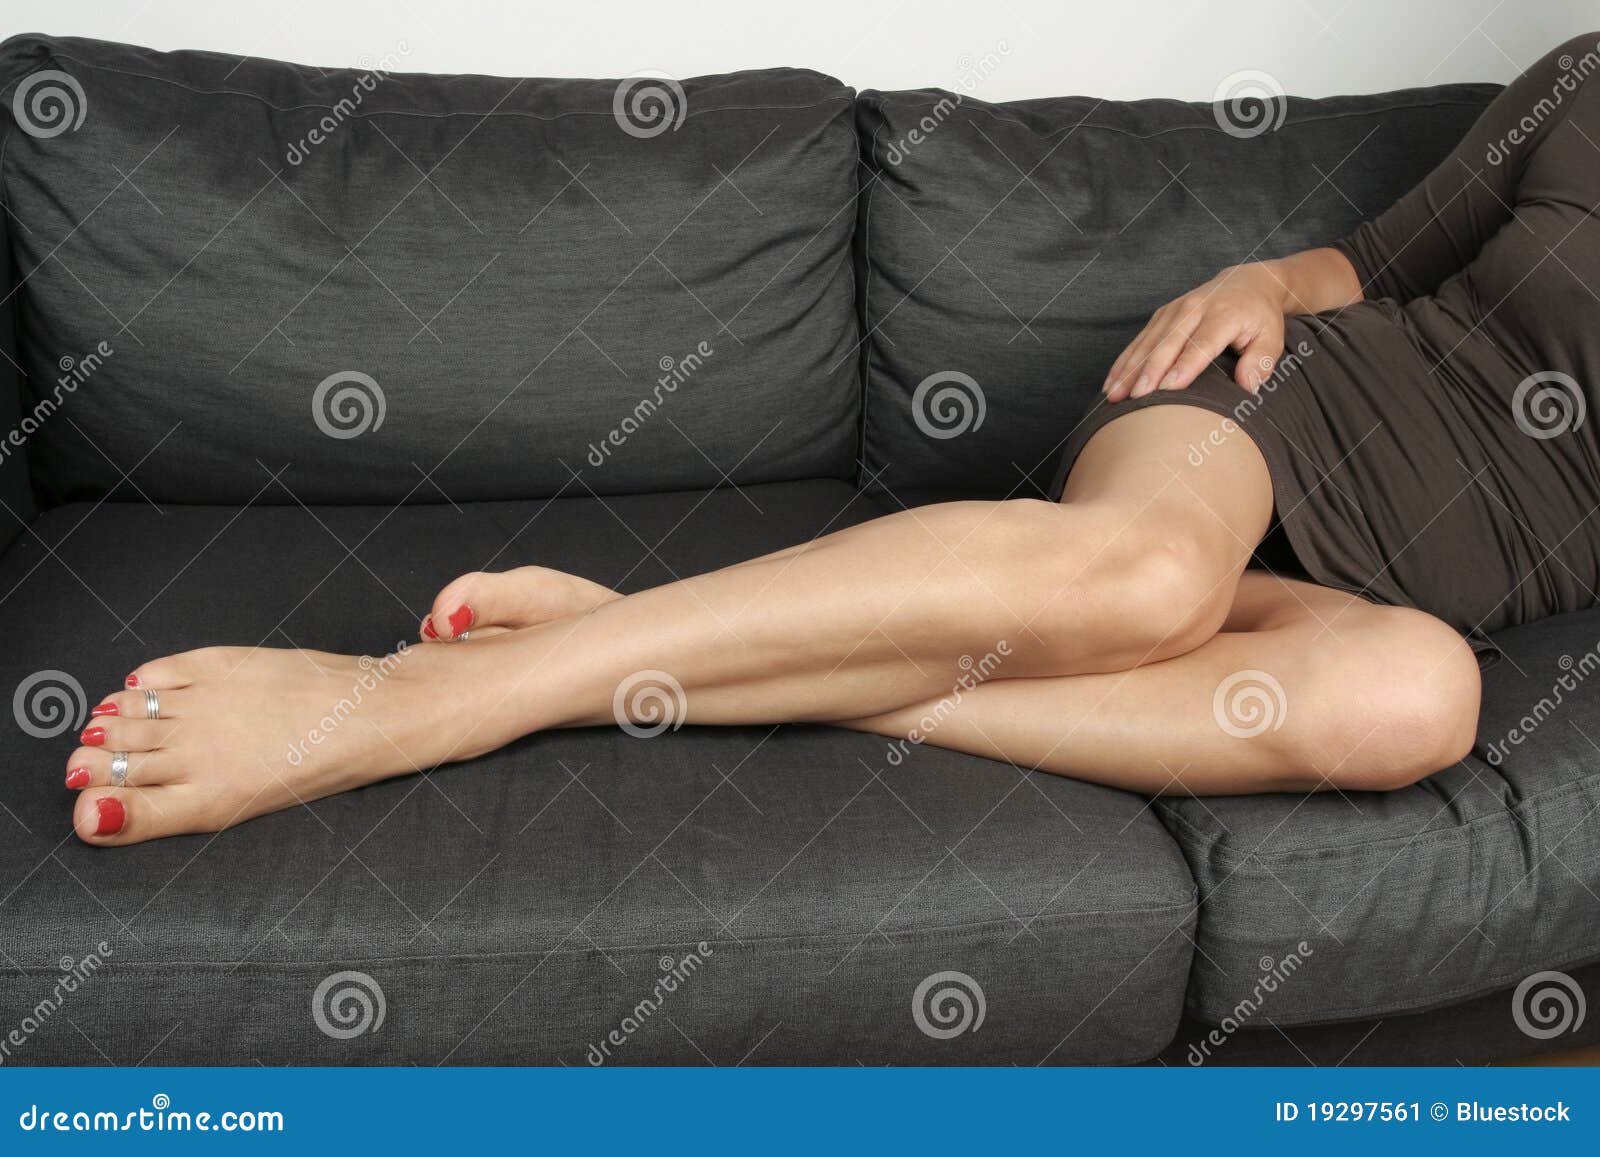 Жена с чувственными ногами. Красивые ножки лежа. Красивые женские ноги на диване. Женщины красивые ножки на диване. Женские ноги лежачие.